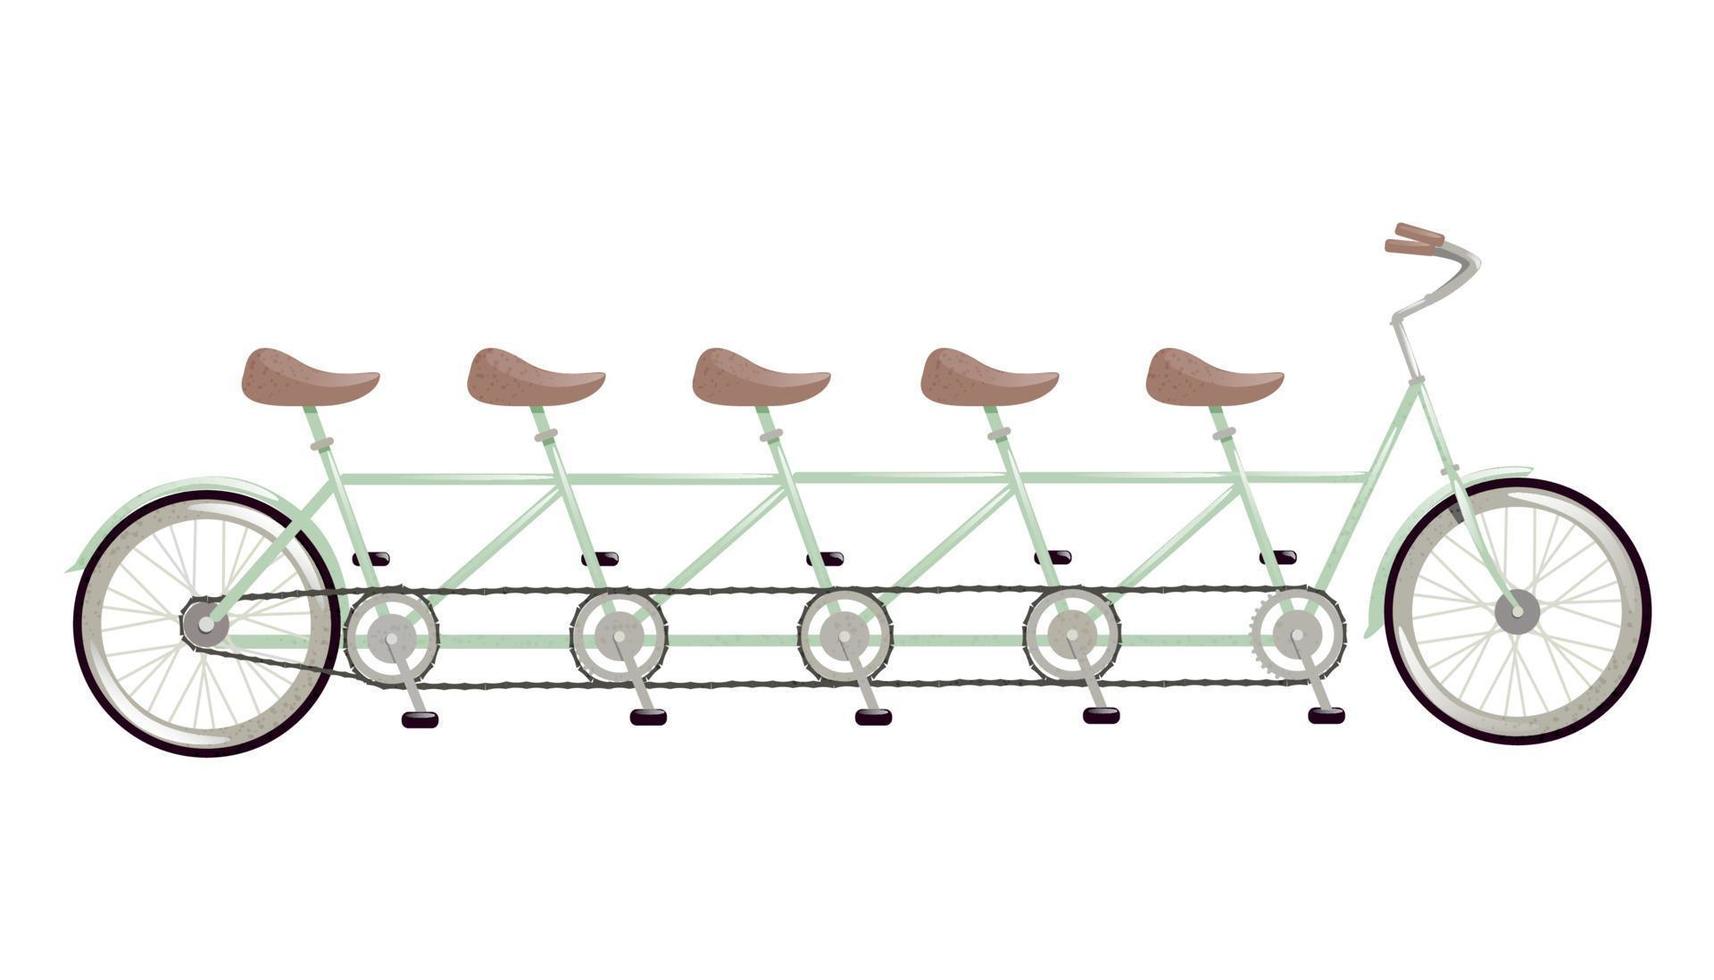 bicicleta em tandem retrô. o conceito de uma bicicleta combinada projetada para várias pessoas. ilustração de ajuste, viagens em equipe, atividades conjuntas ao ar livre. vetor